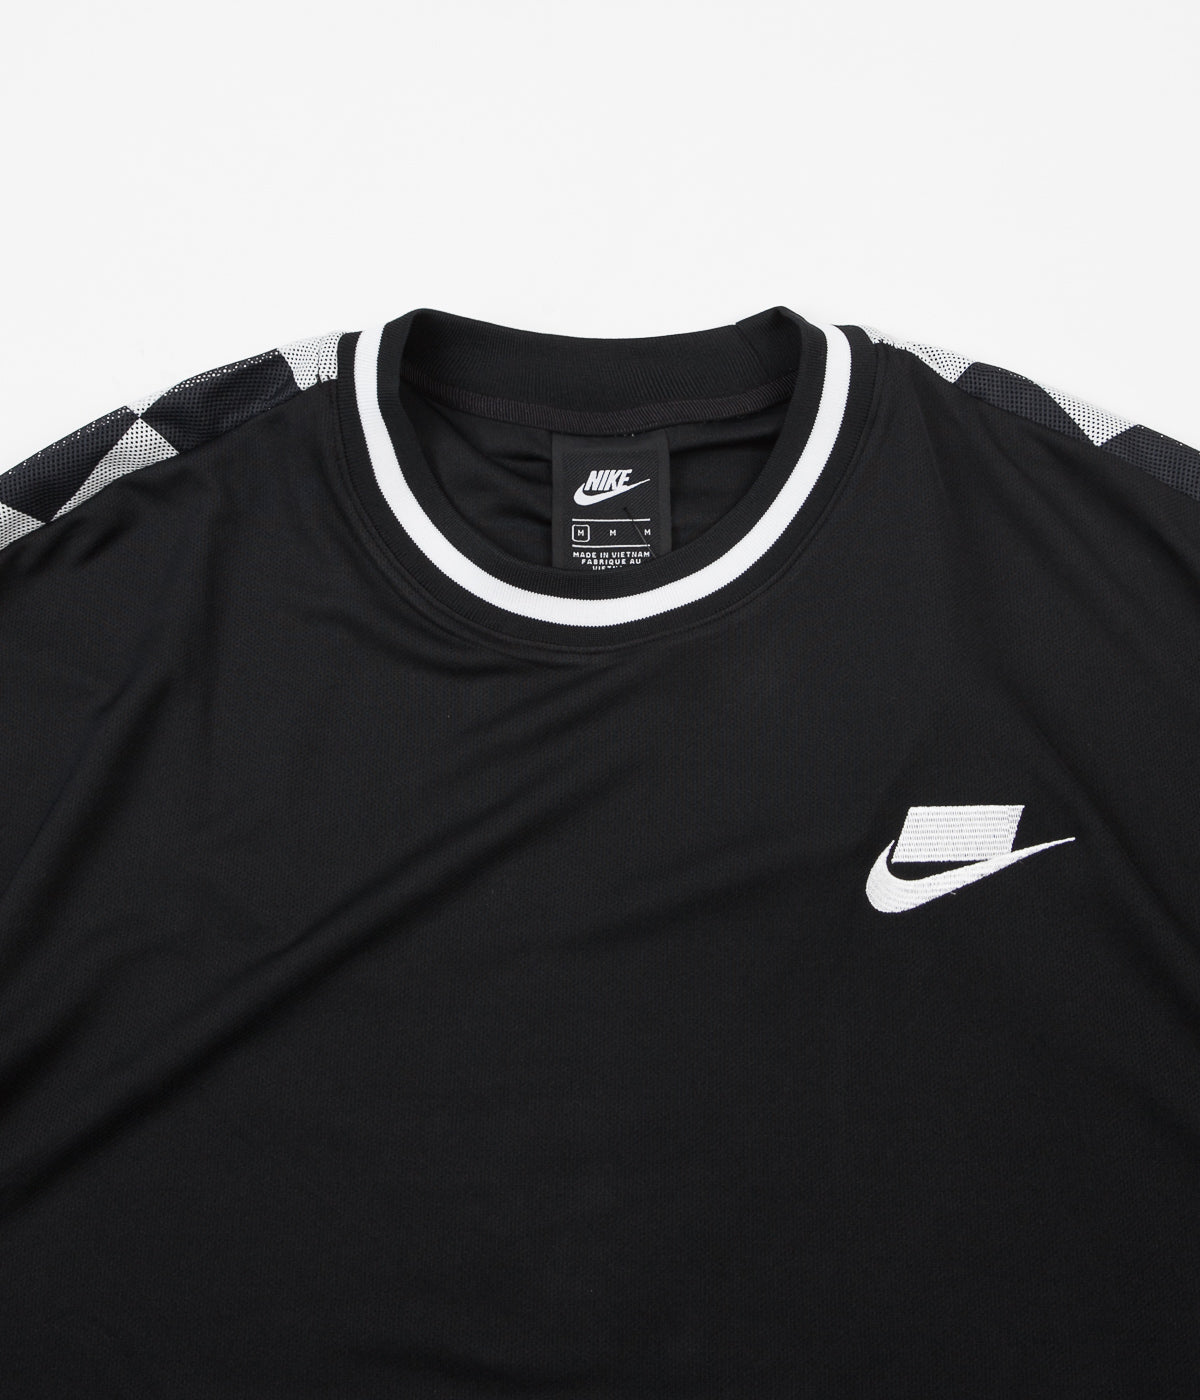 Nike Sport Pack T-Shirt - Black / Black / White | Always in Colour